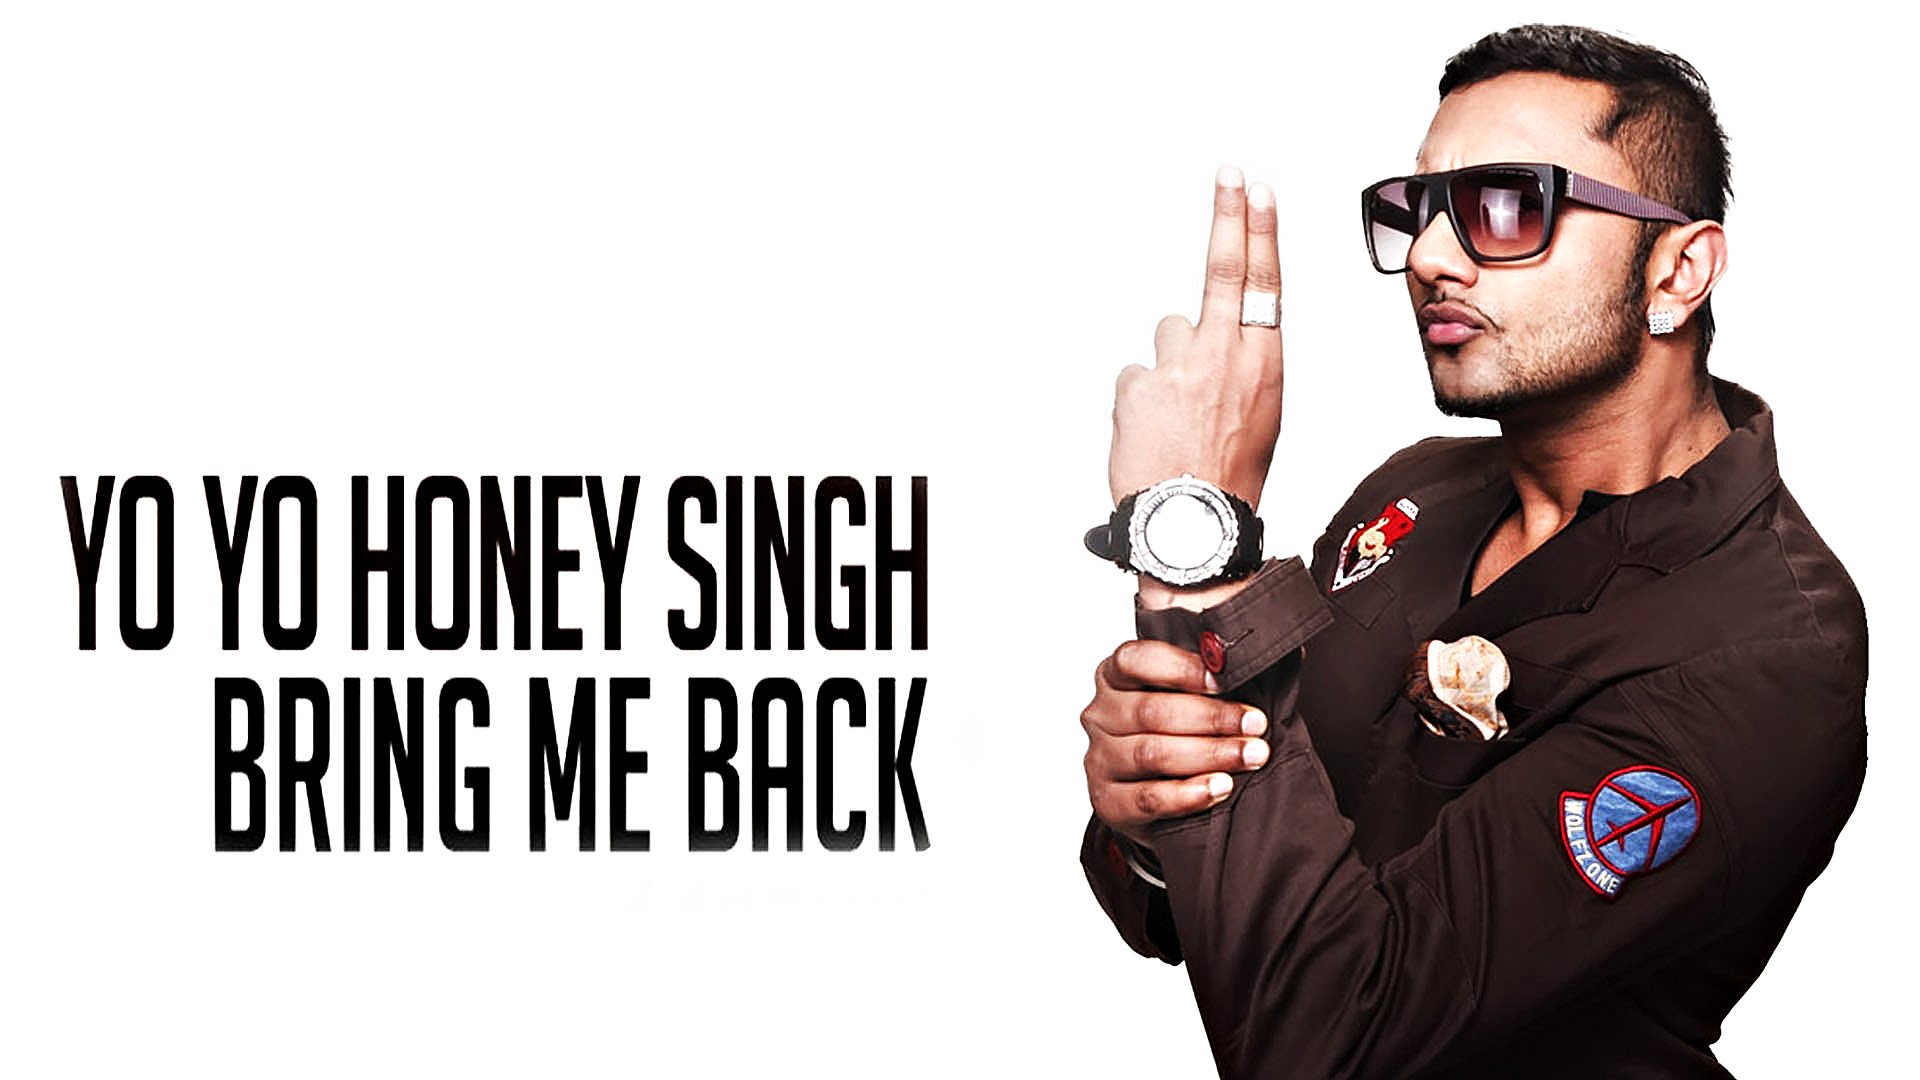 Singer Yo Yo Honey Singh HD Desktop Wallpaper 